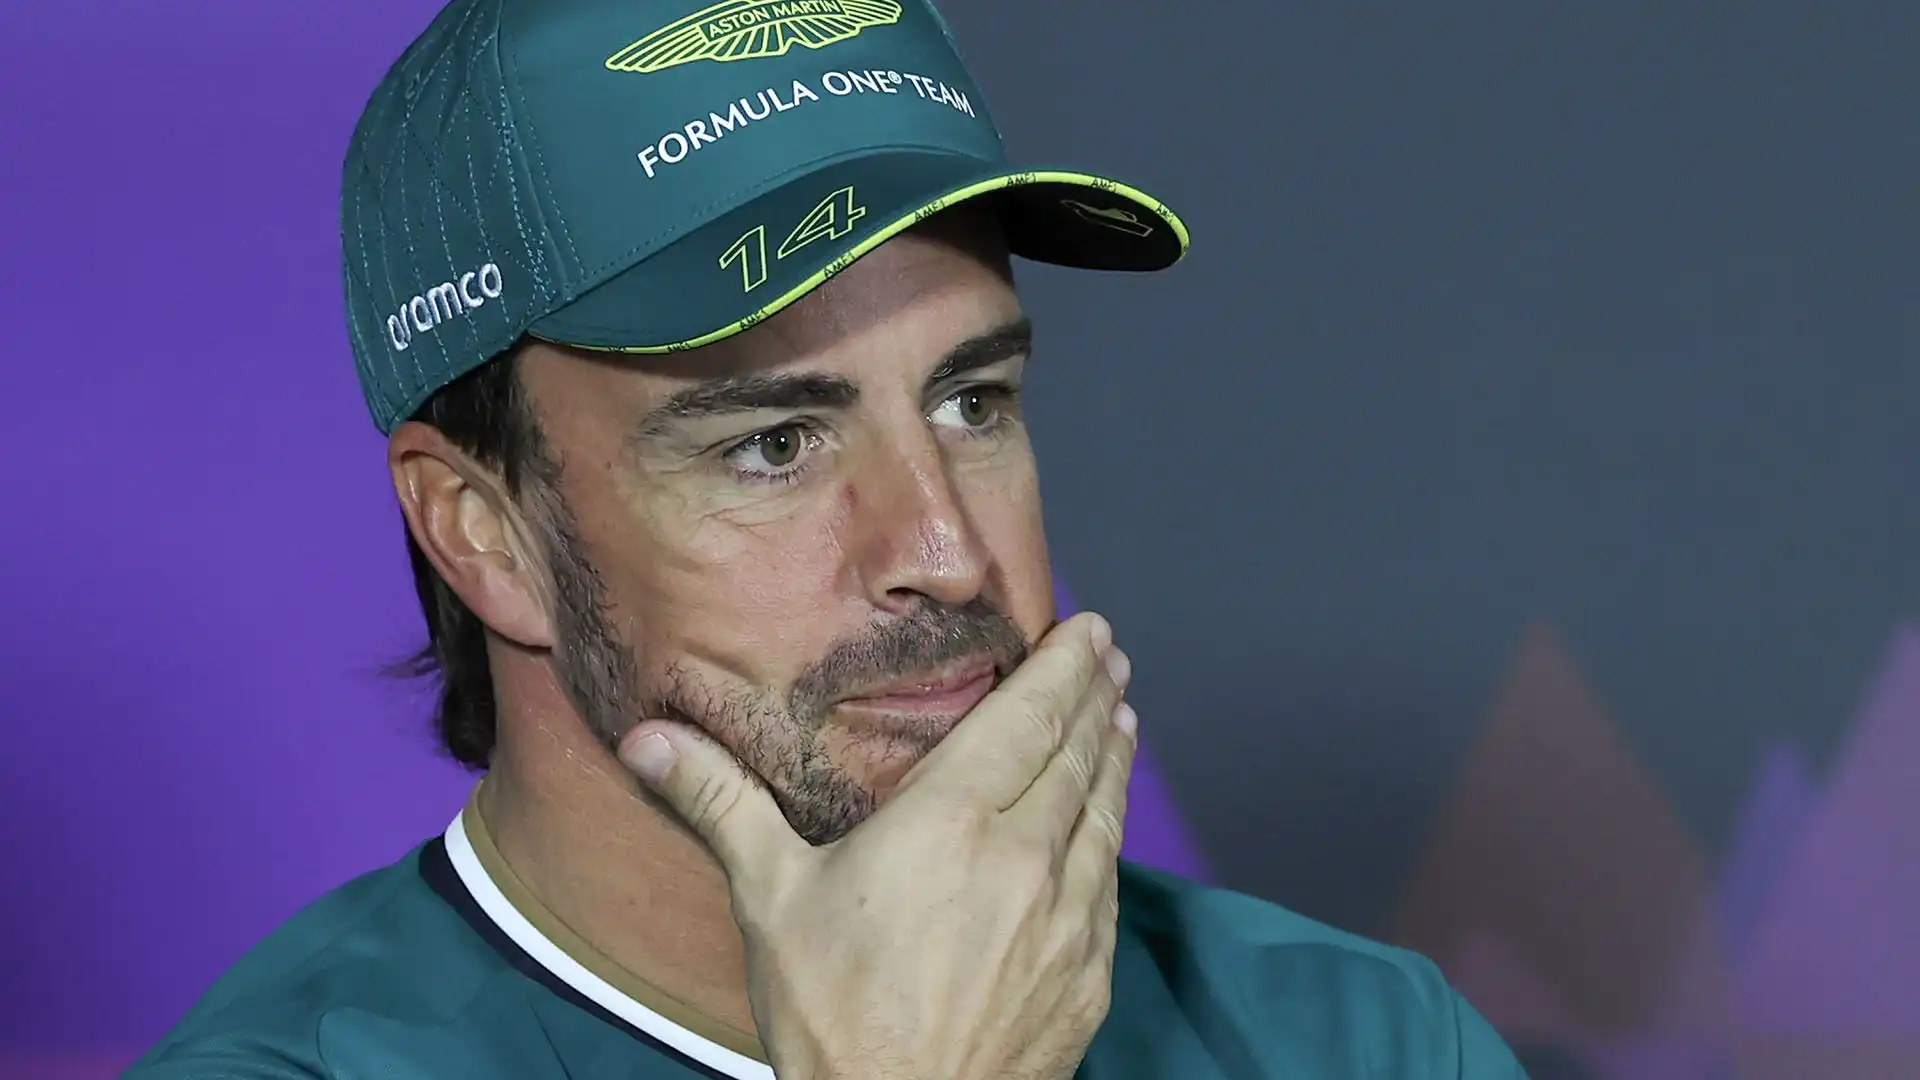 Secondo le ultime indiscrezioni, uno dei piloti favoriti per prendere il posto del messicano è Fernando Alonso